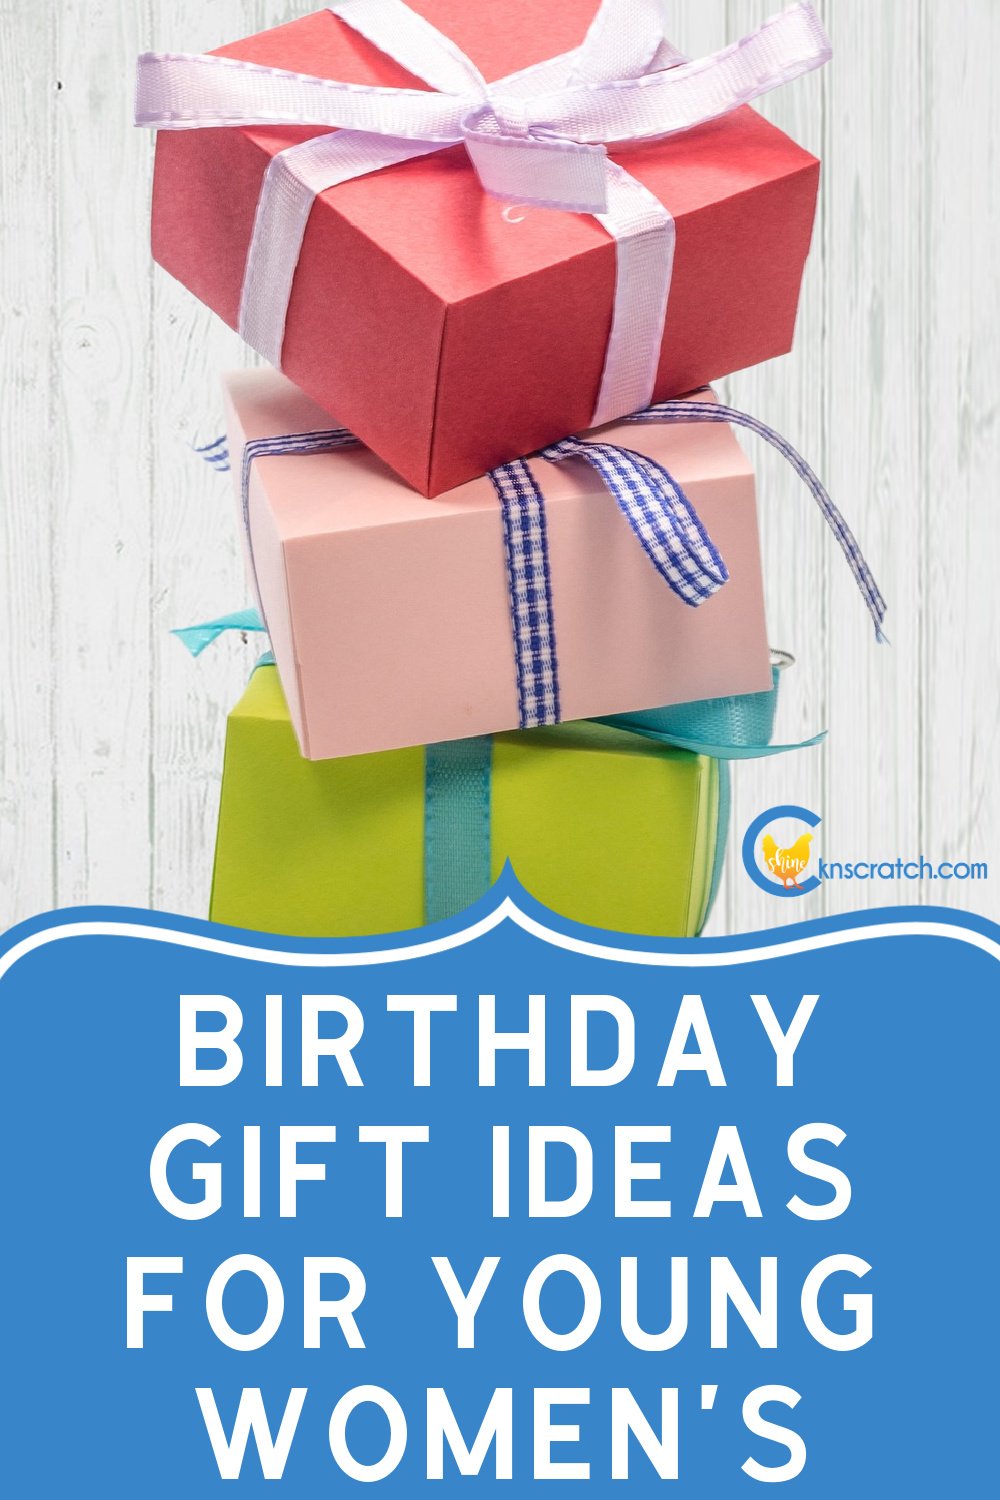 https://images.squarespace-cdn.com/content/v1/530cc2fde4b00f4777135b77/1702077819065-OVXHSS4YO9XRX2PFG6NV/birthday+gift+ideas+for+lds+young+women.jpg